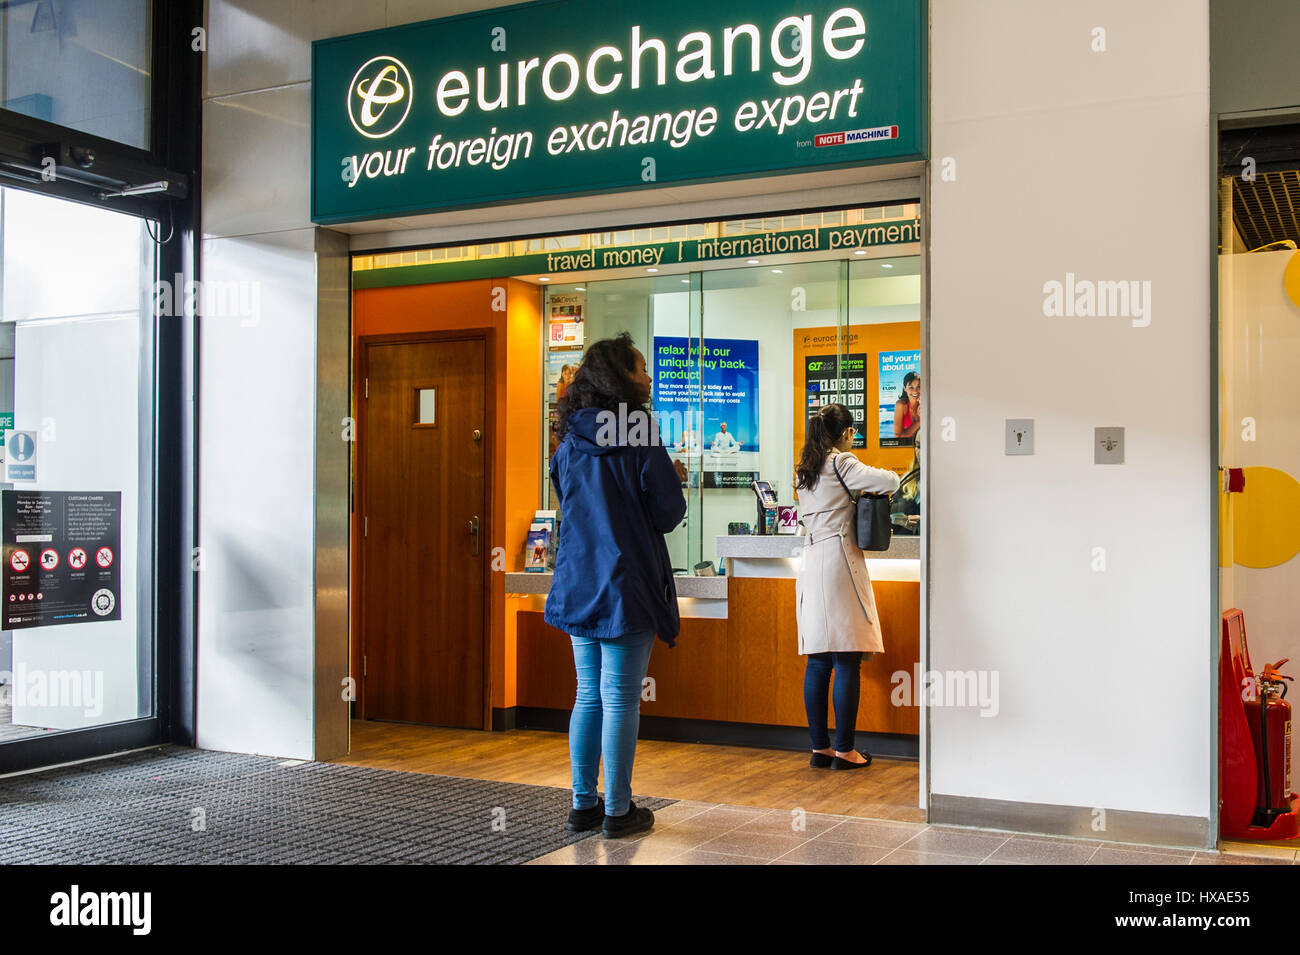 Eurochange rama de Coventry (un cambio de divisas extranjeras outlet) en el oeste de huertas centro comercial. Foto de stock